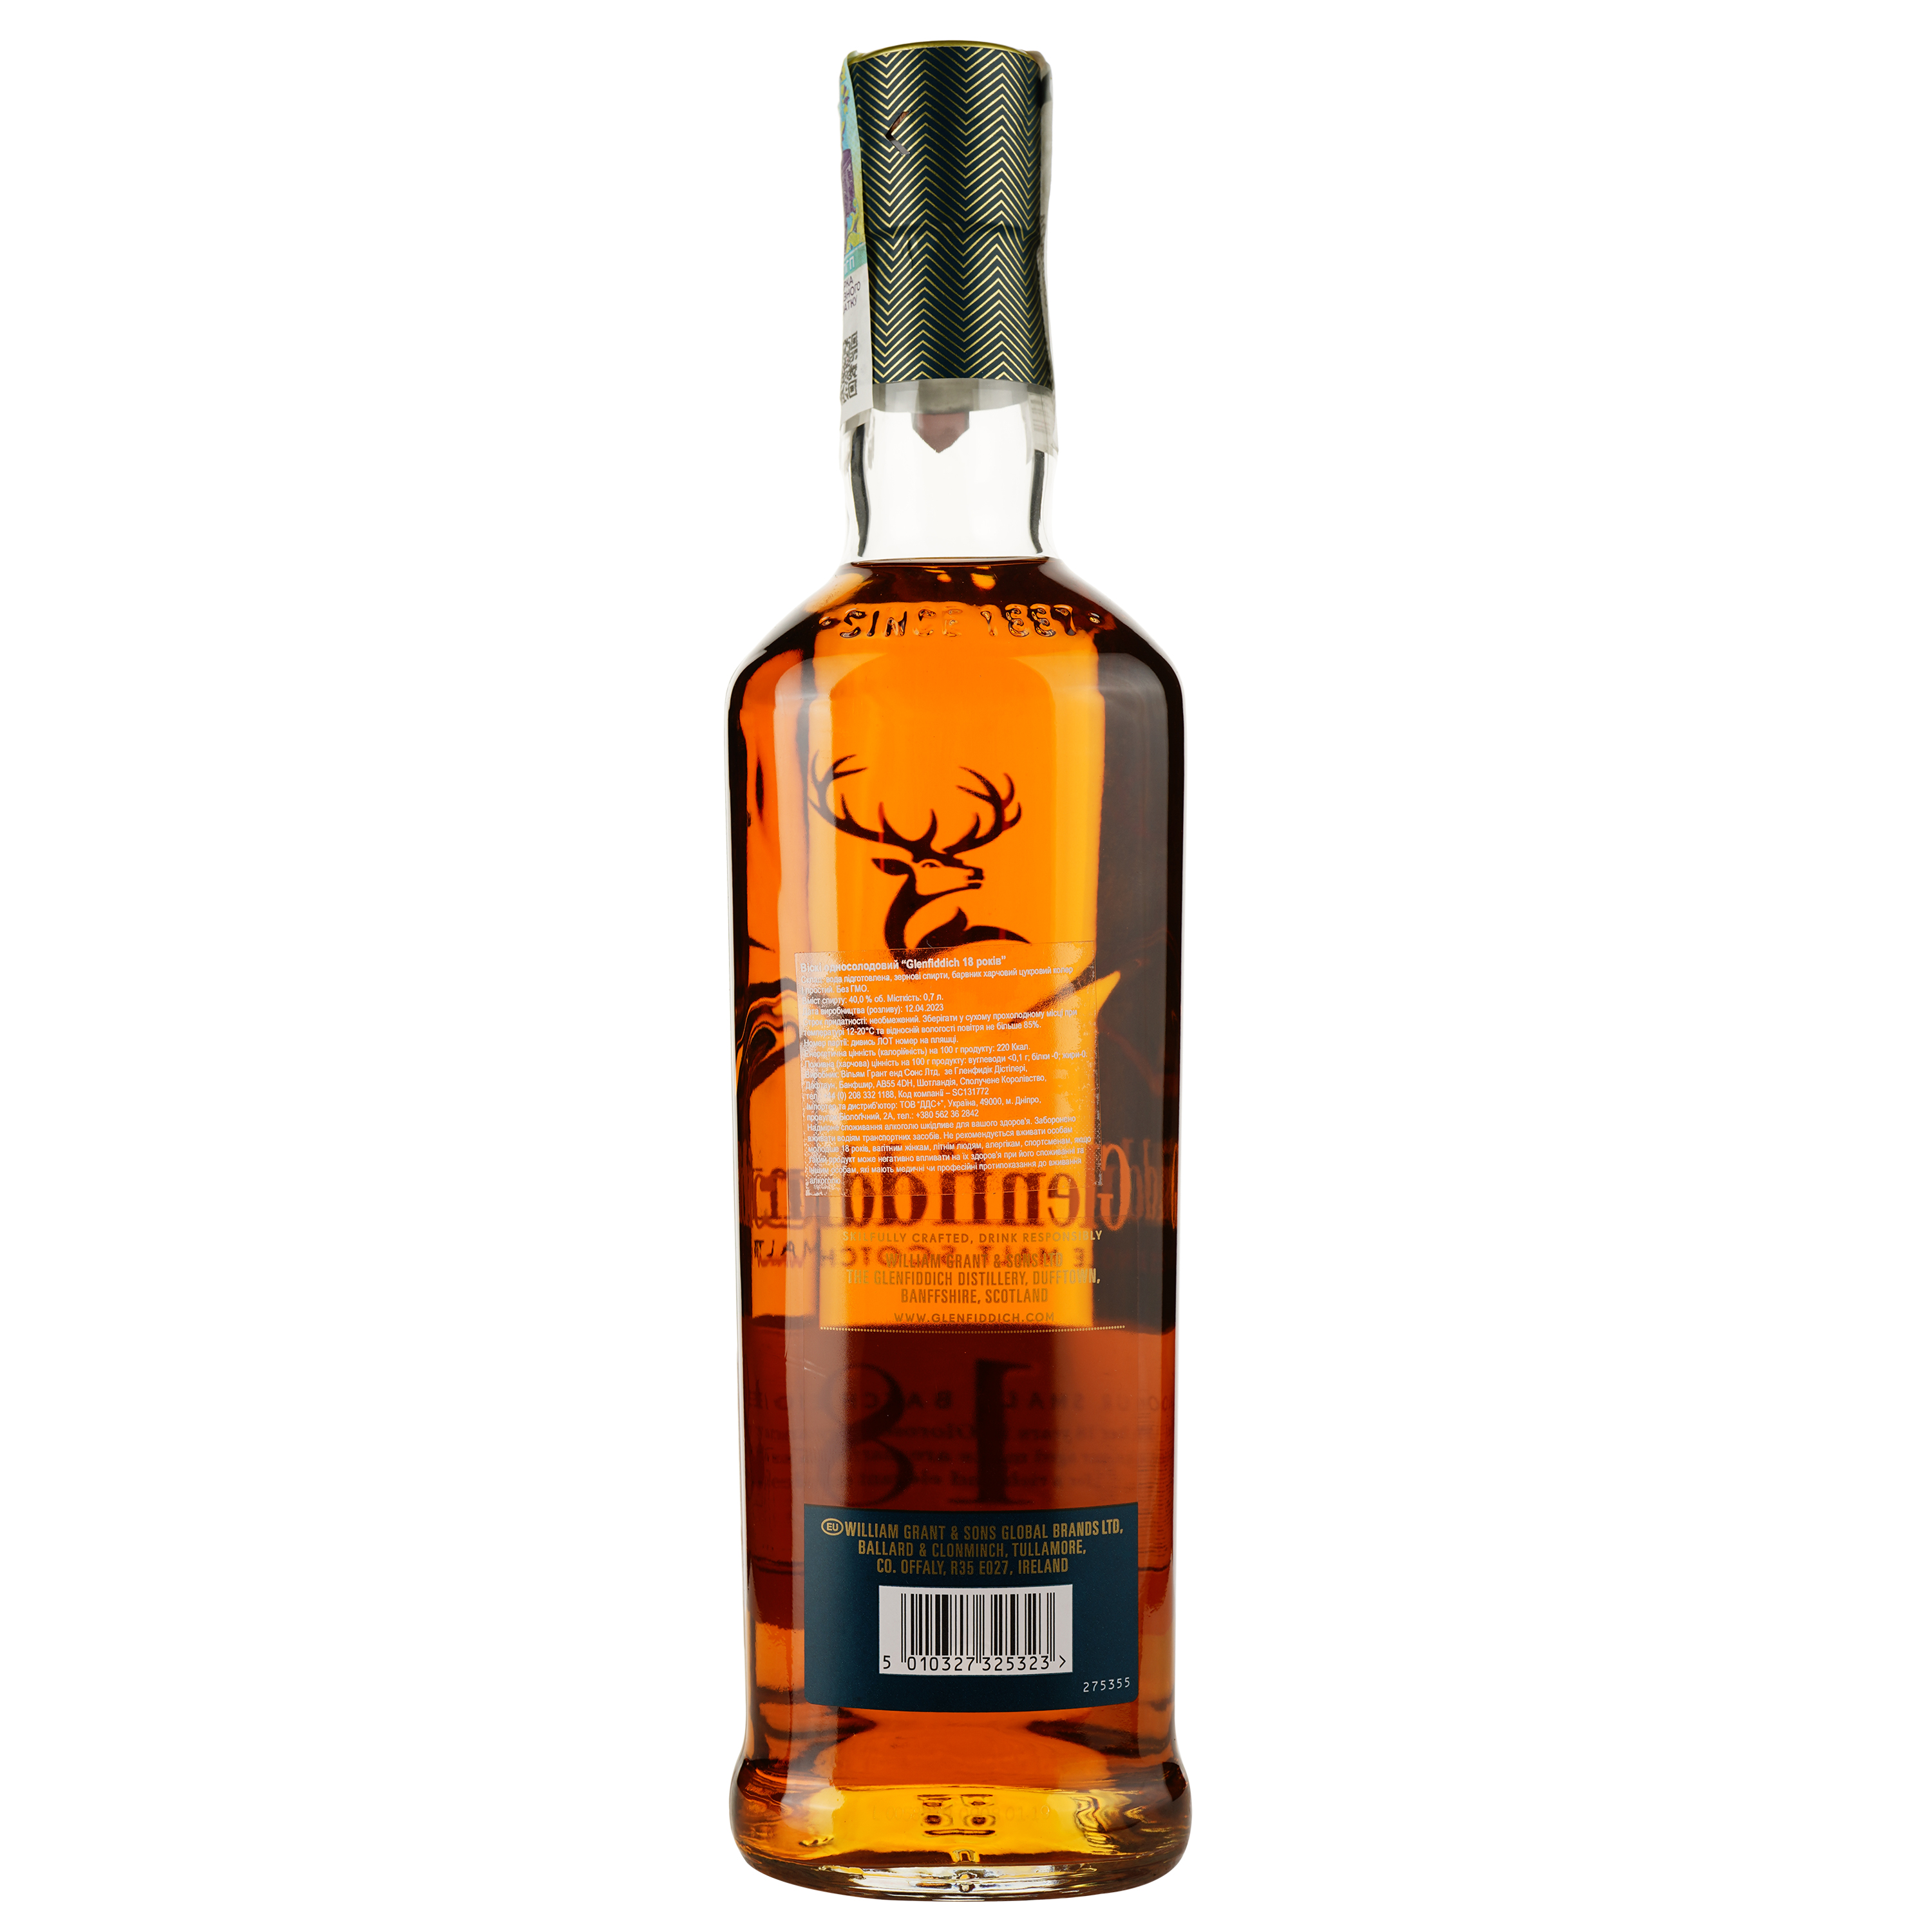 Виски Glenfiddich Single Malt Scotch 18 yo, в подарочной упаковке, 40 %, 0,7 л (476800) - фото 3